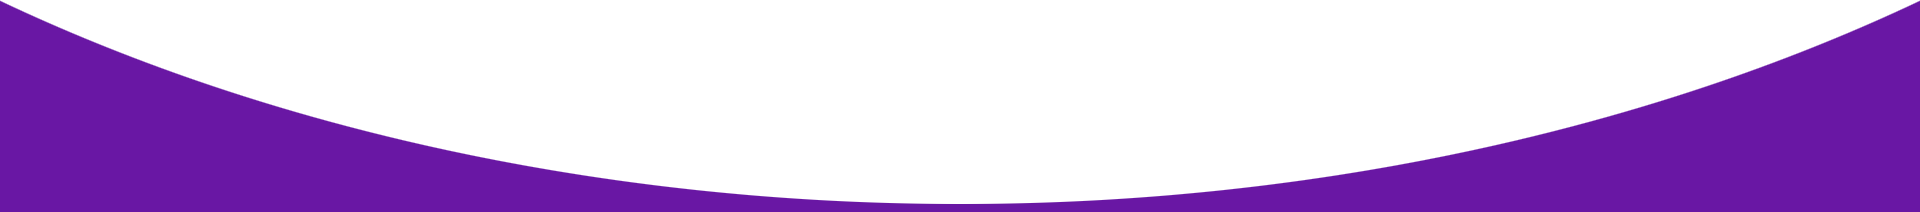 Curve-purple